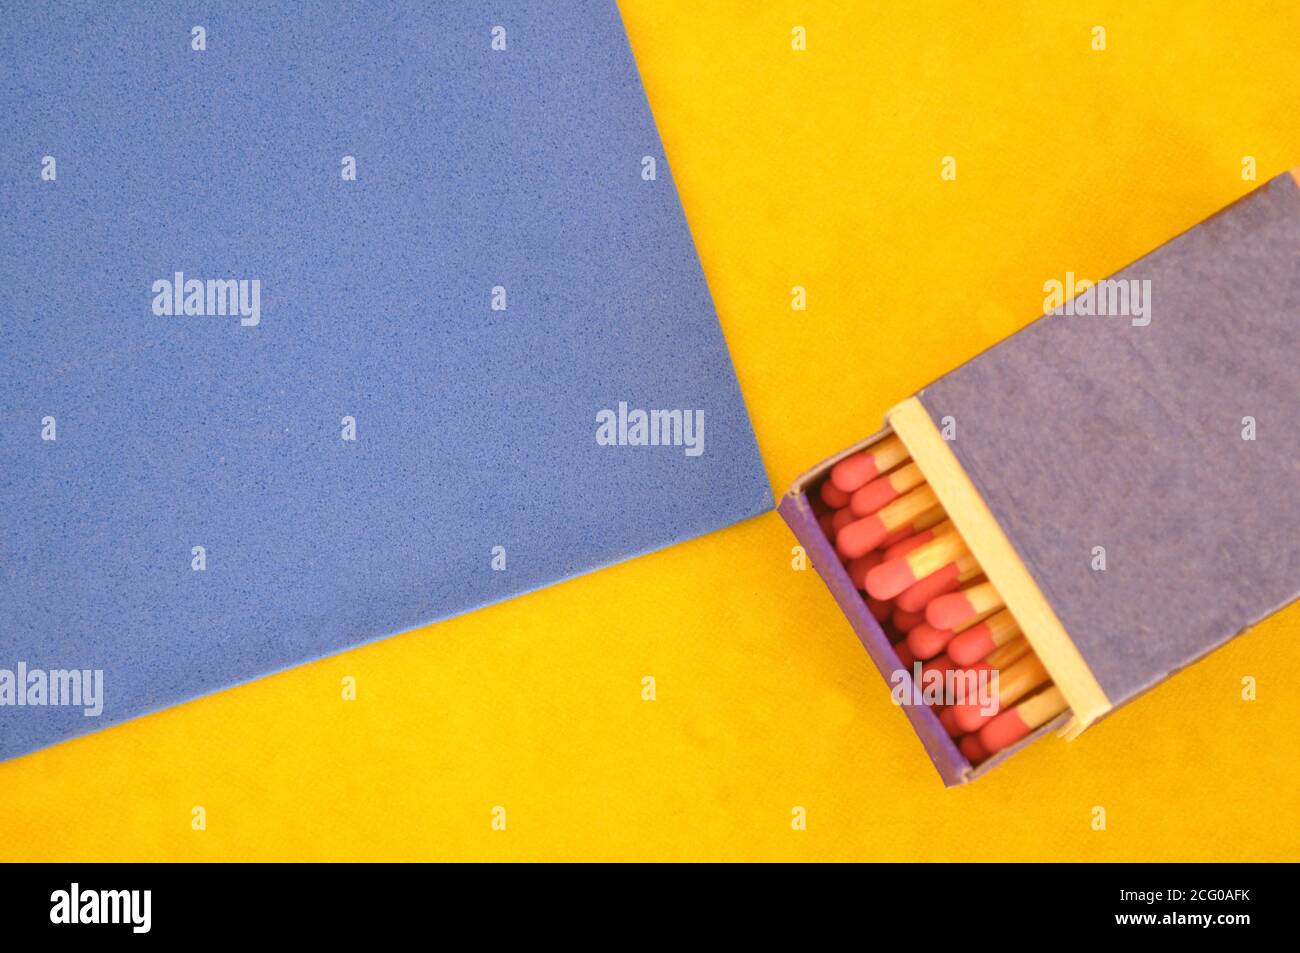 Boîte d'allumettes, en bois, allumettes à tête rouge dans une boîte à moitié ouverte, sur fond bleu et jaune, avec espace de copie Banque D'Images